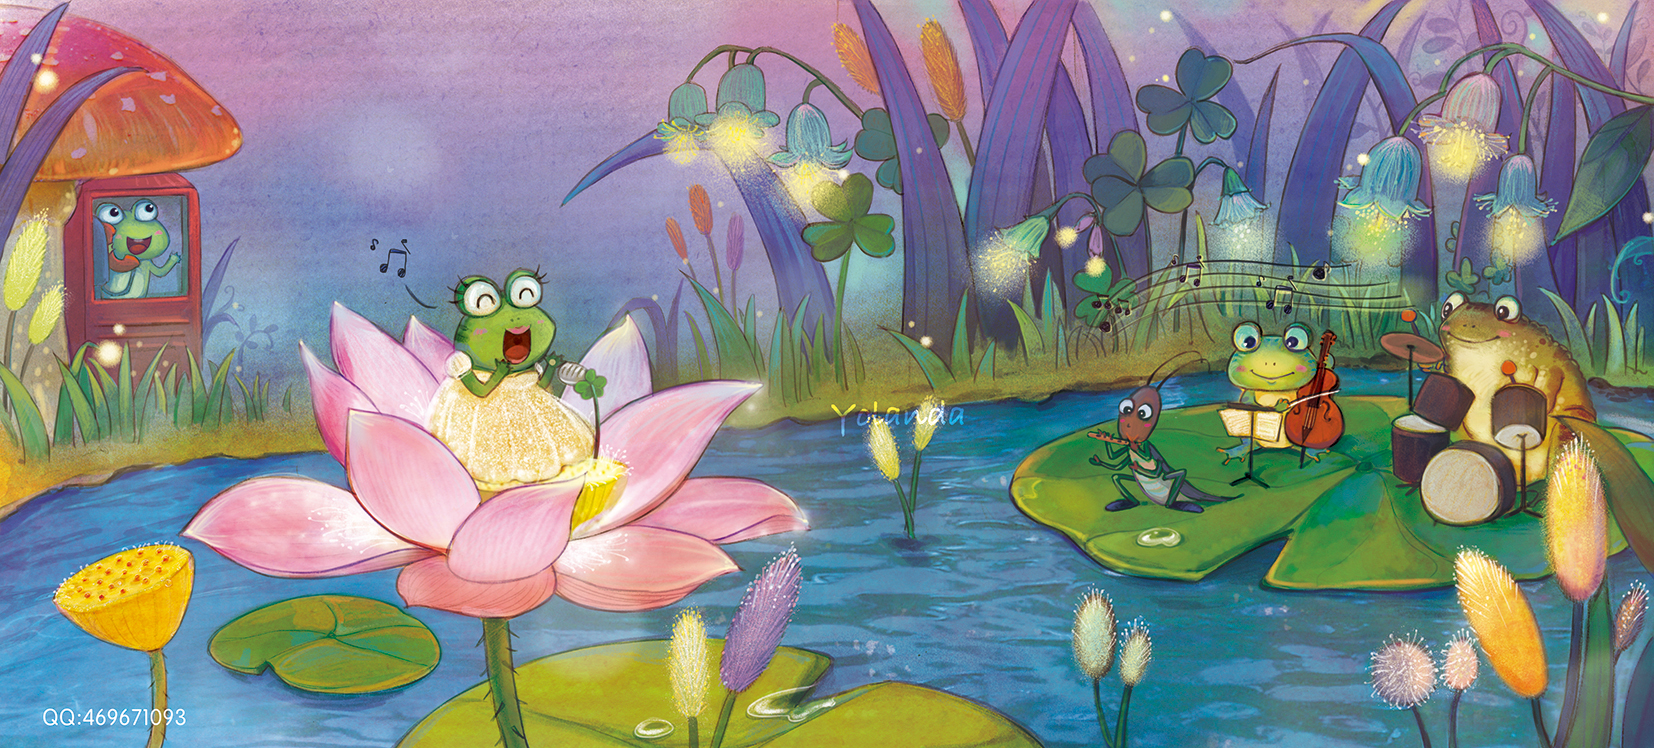 小青蛙邀请你来参加夏夜的音乐会啦!